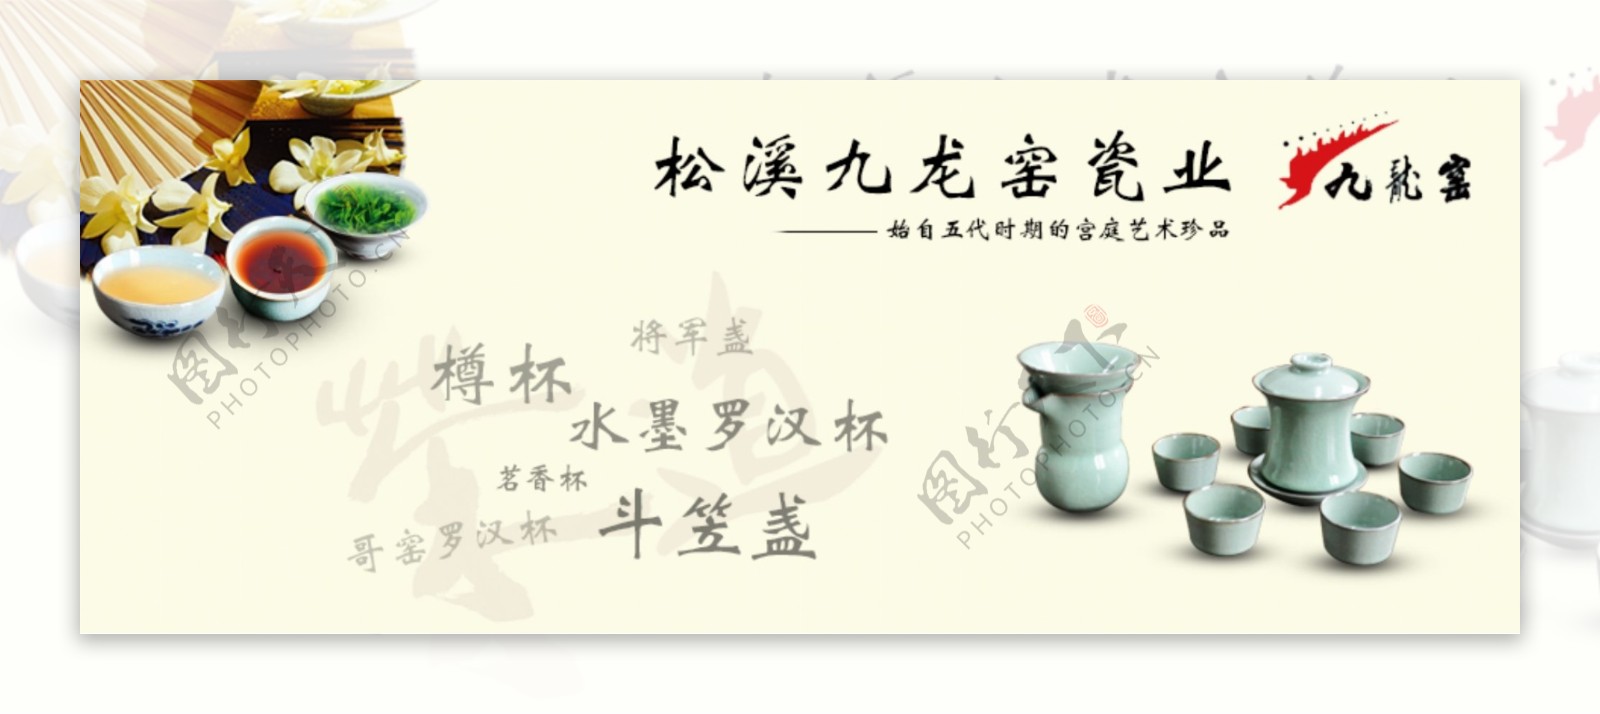 松溪窑瓷促销海报